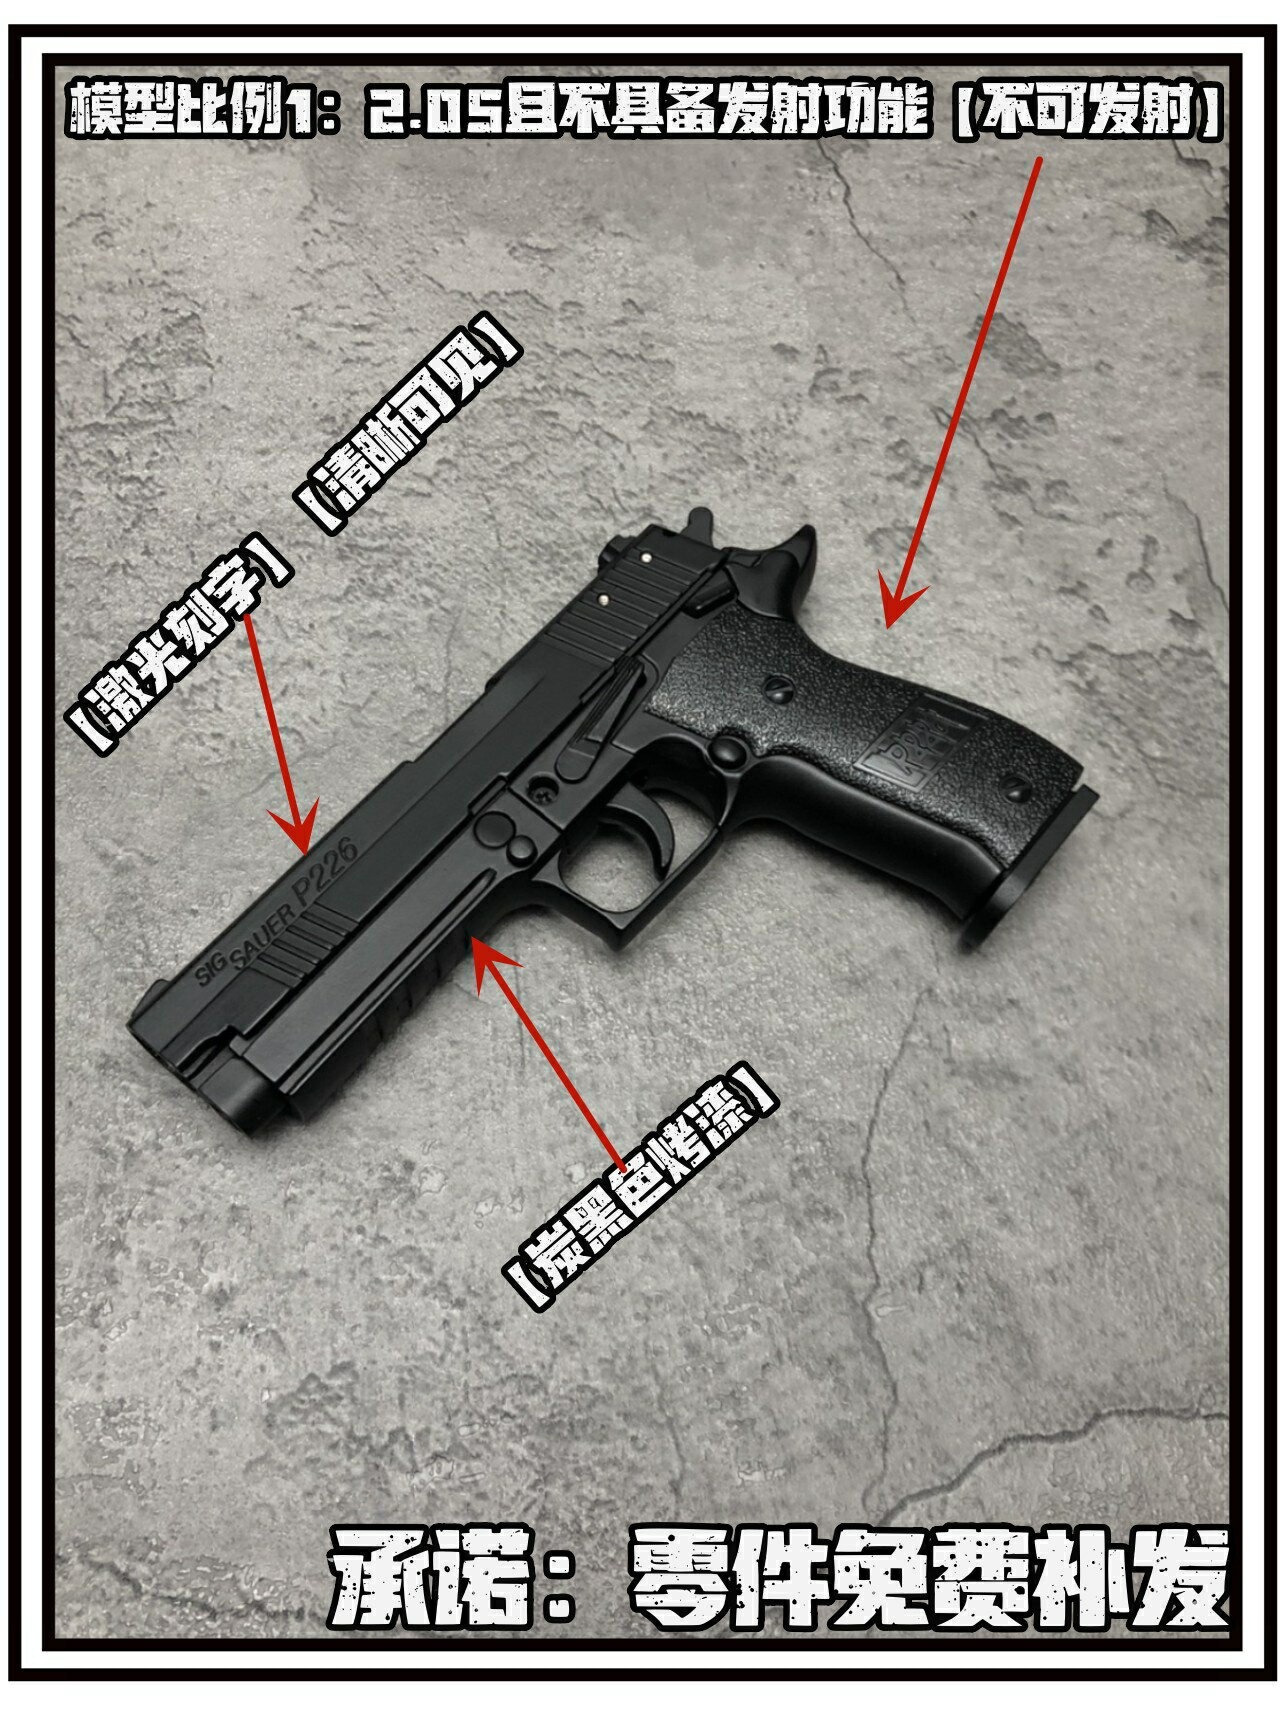 西格紹爾P226合金模型槍金屬仿真大號男孩玩具手搶1:2.05不可發射